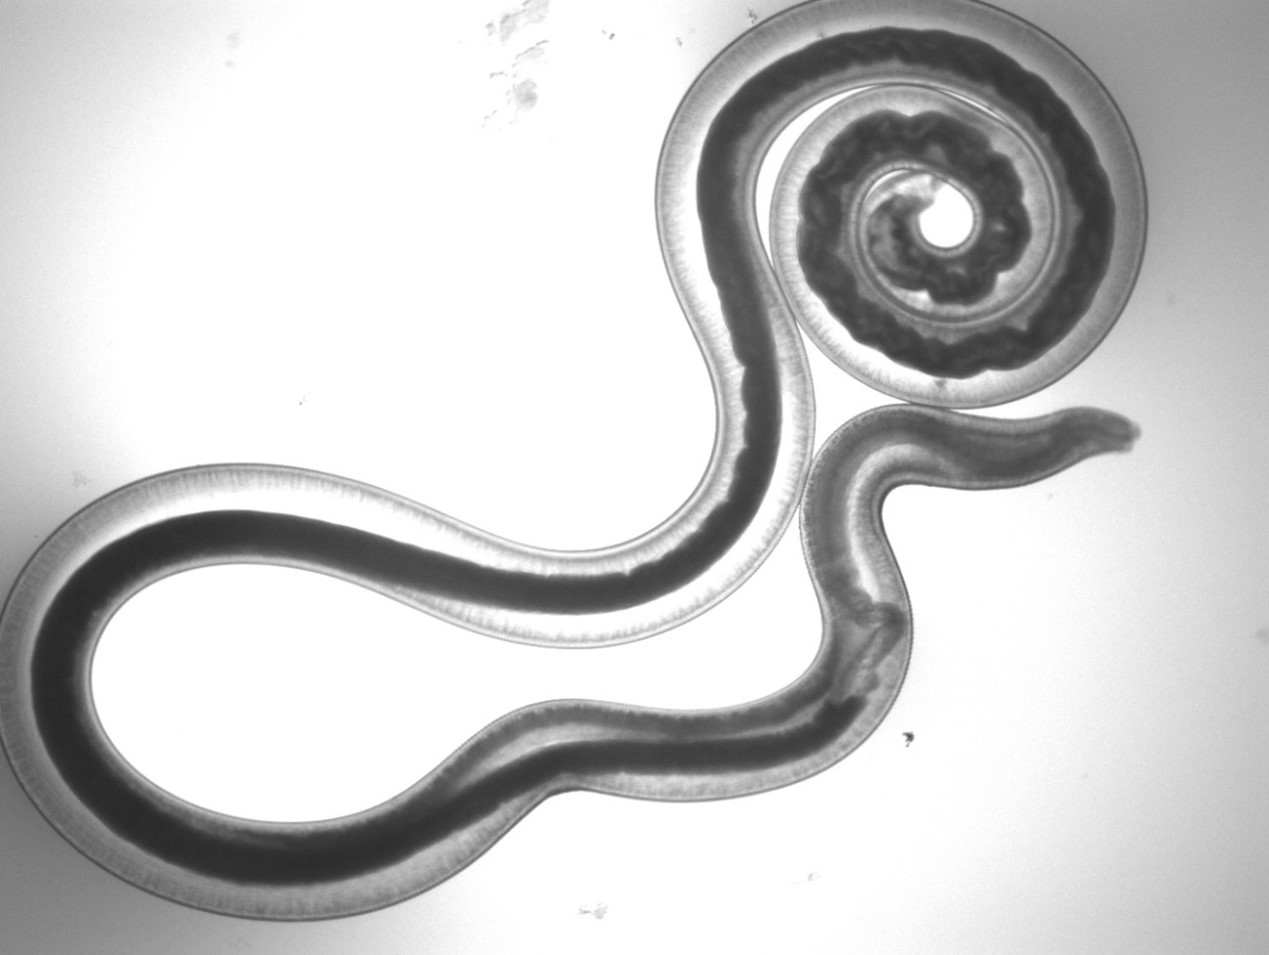 大线虫 - 微生物镜检 - 污托邦社区